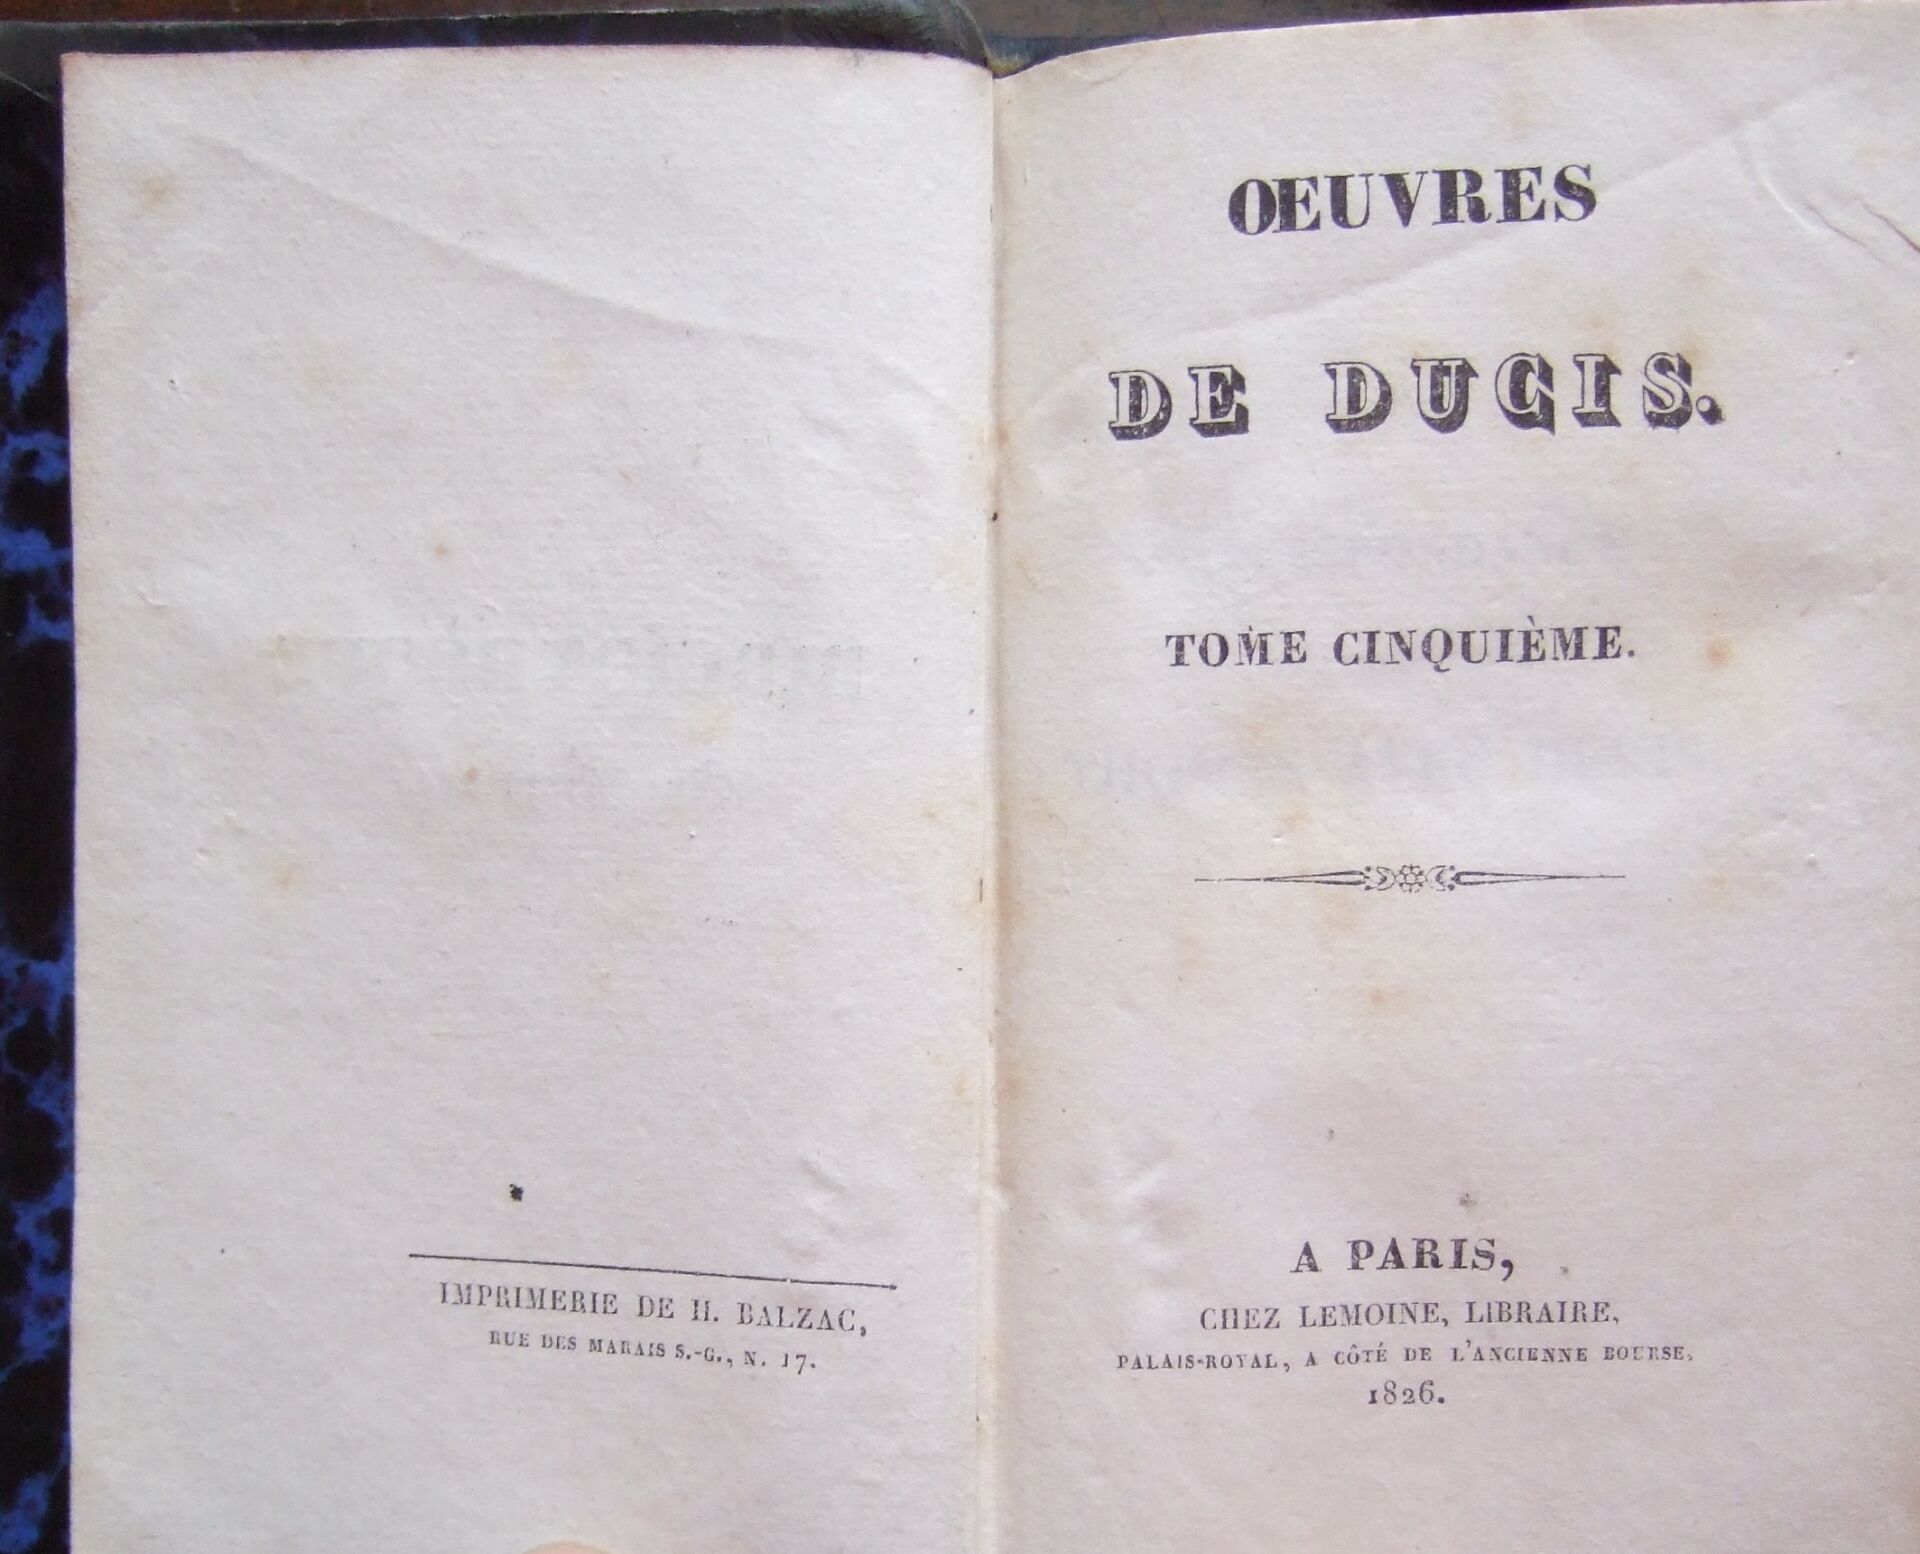 Null Jean-François Ducis, OEuvres [volumes V et VI].
Paris, Lemoine, [Imprimerie&hellip;